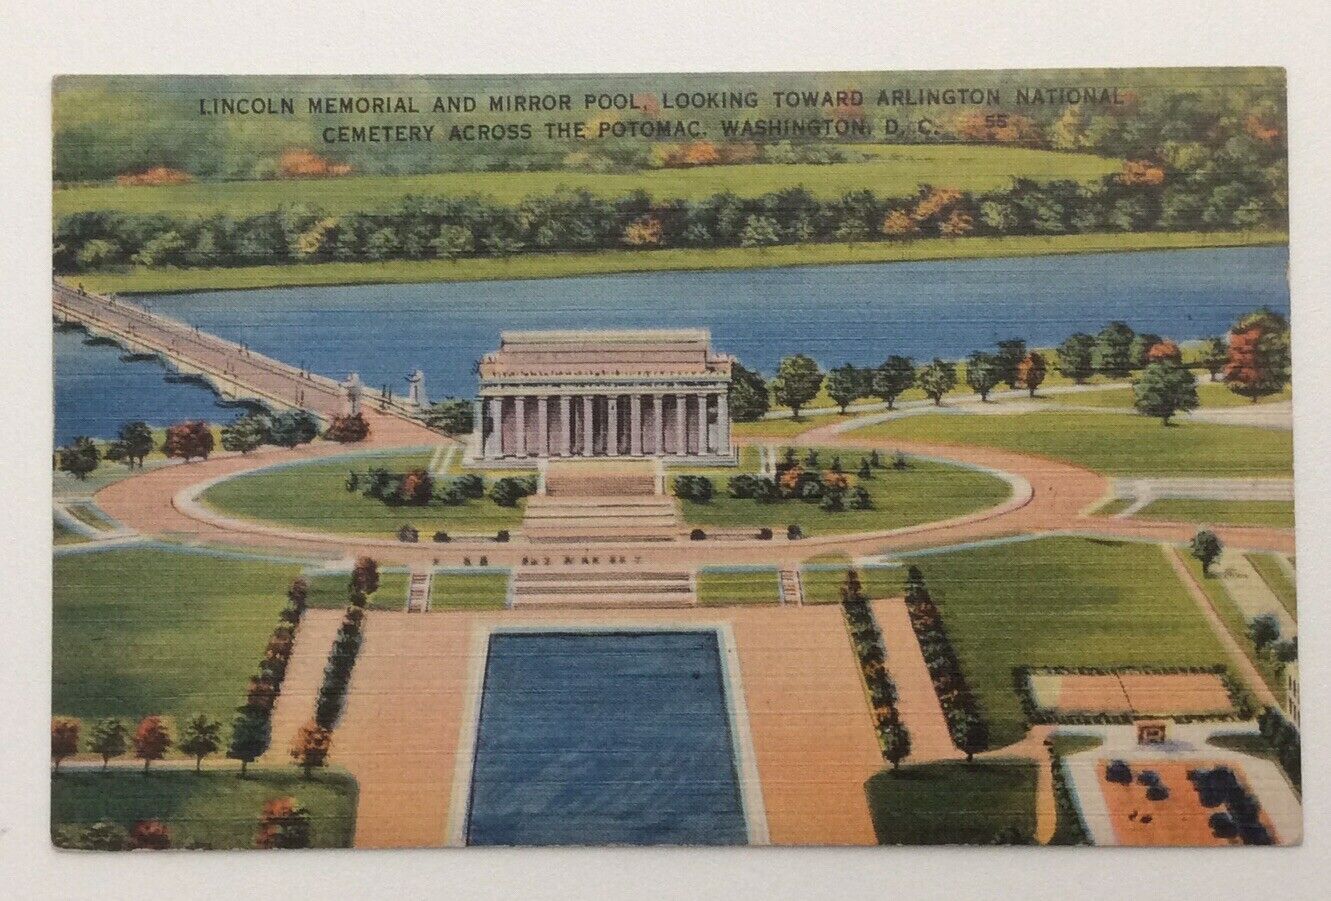 Lincoln Memorial Mirror Pool Arlington National Cemetery Potomac Washington DC